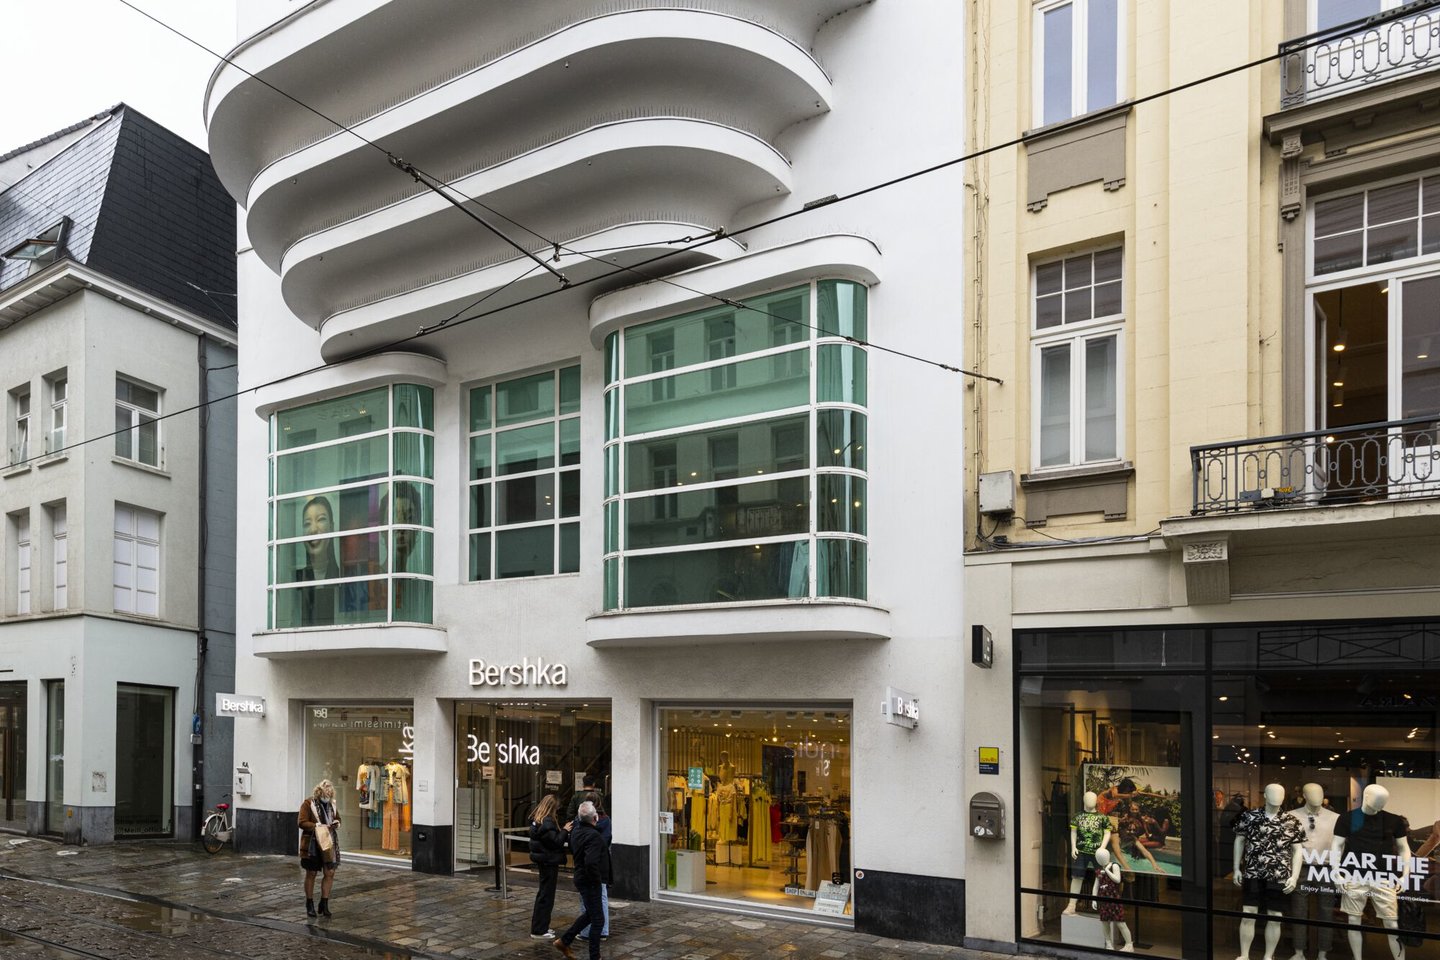 Etalage van kledingwinkel Berschka in Gent